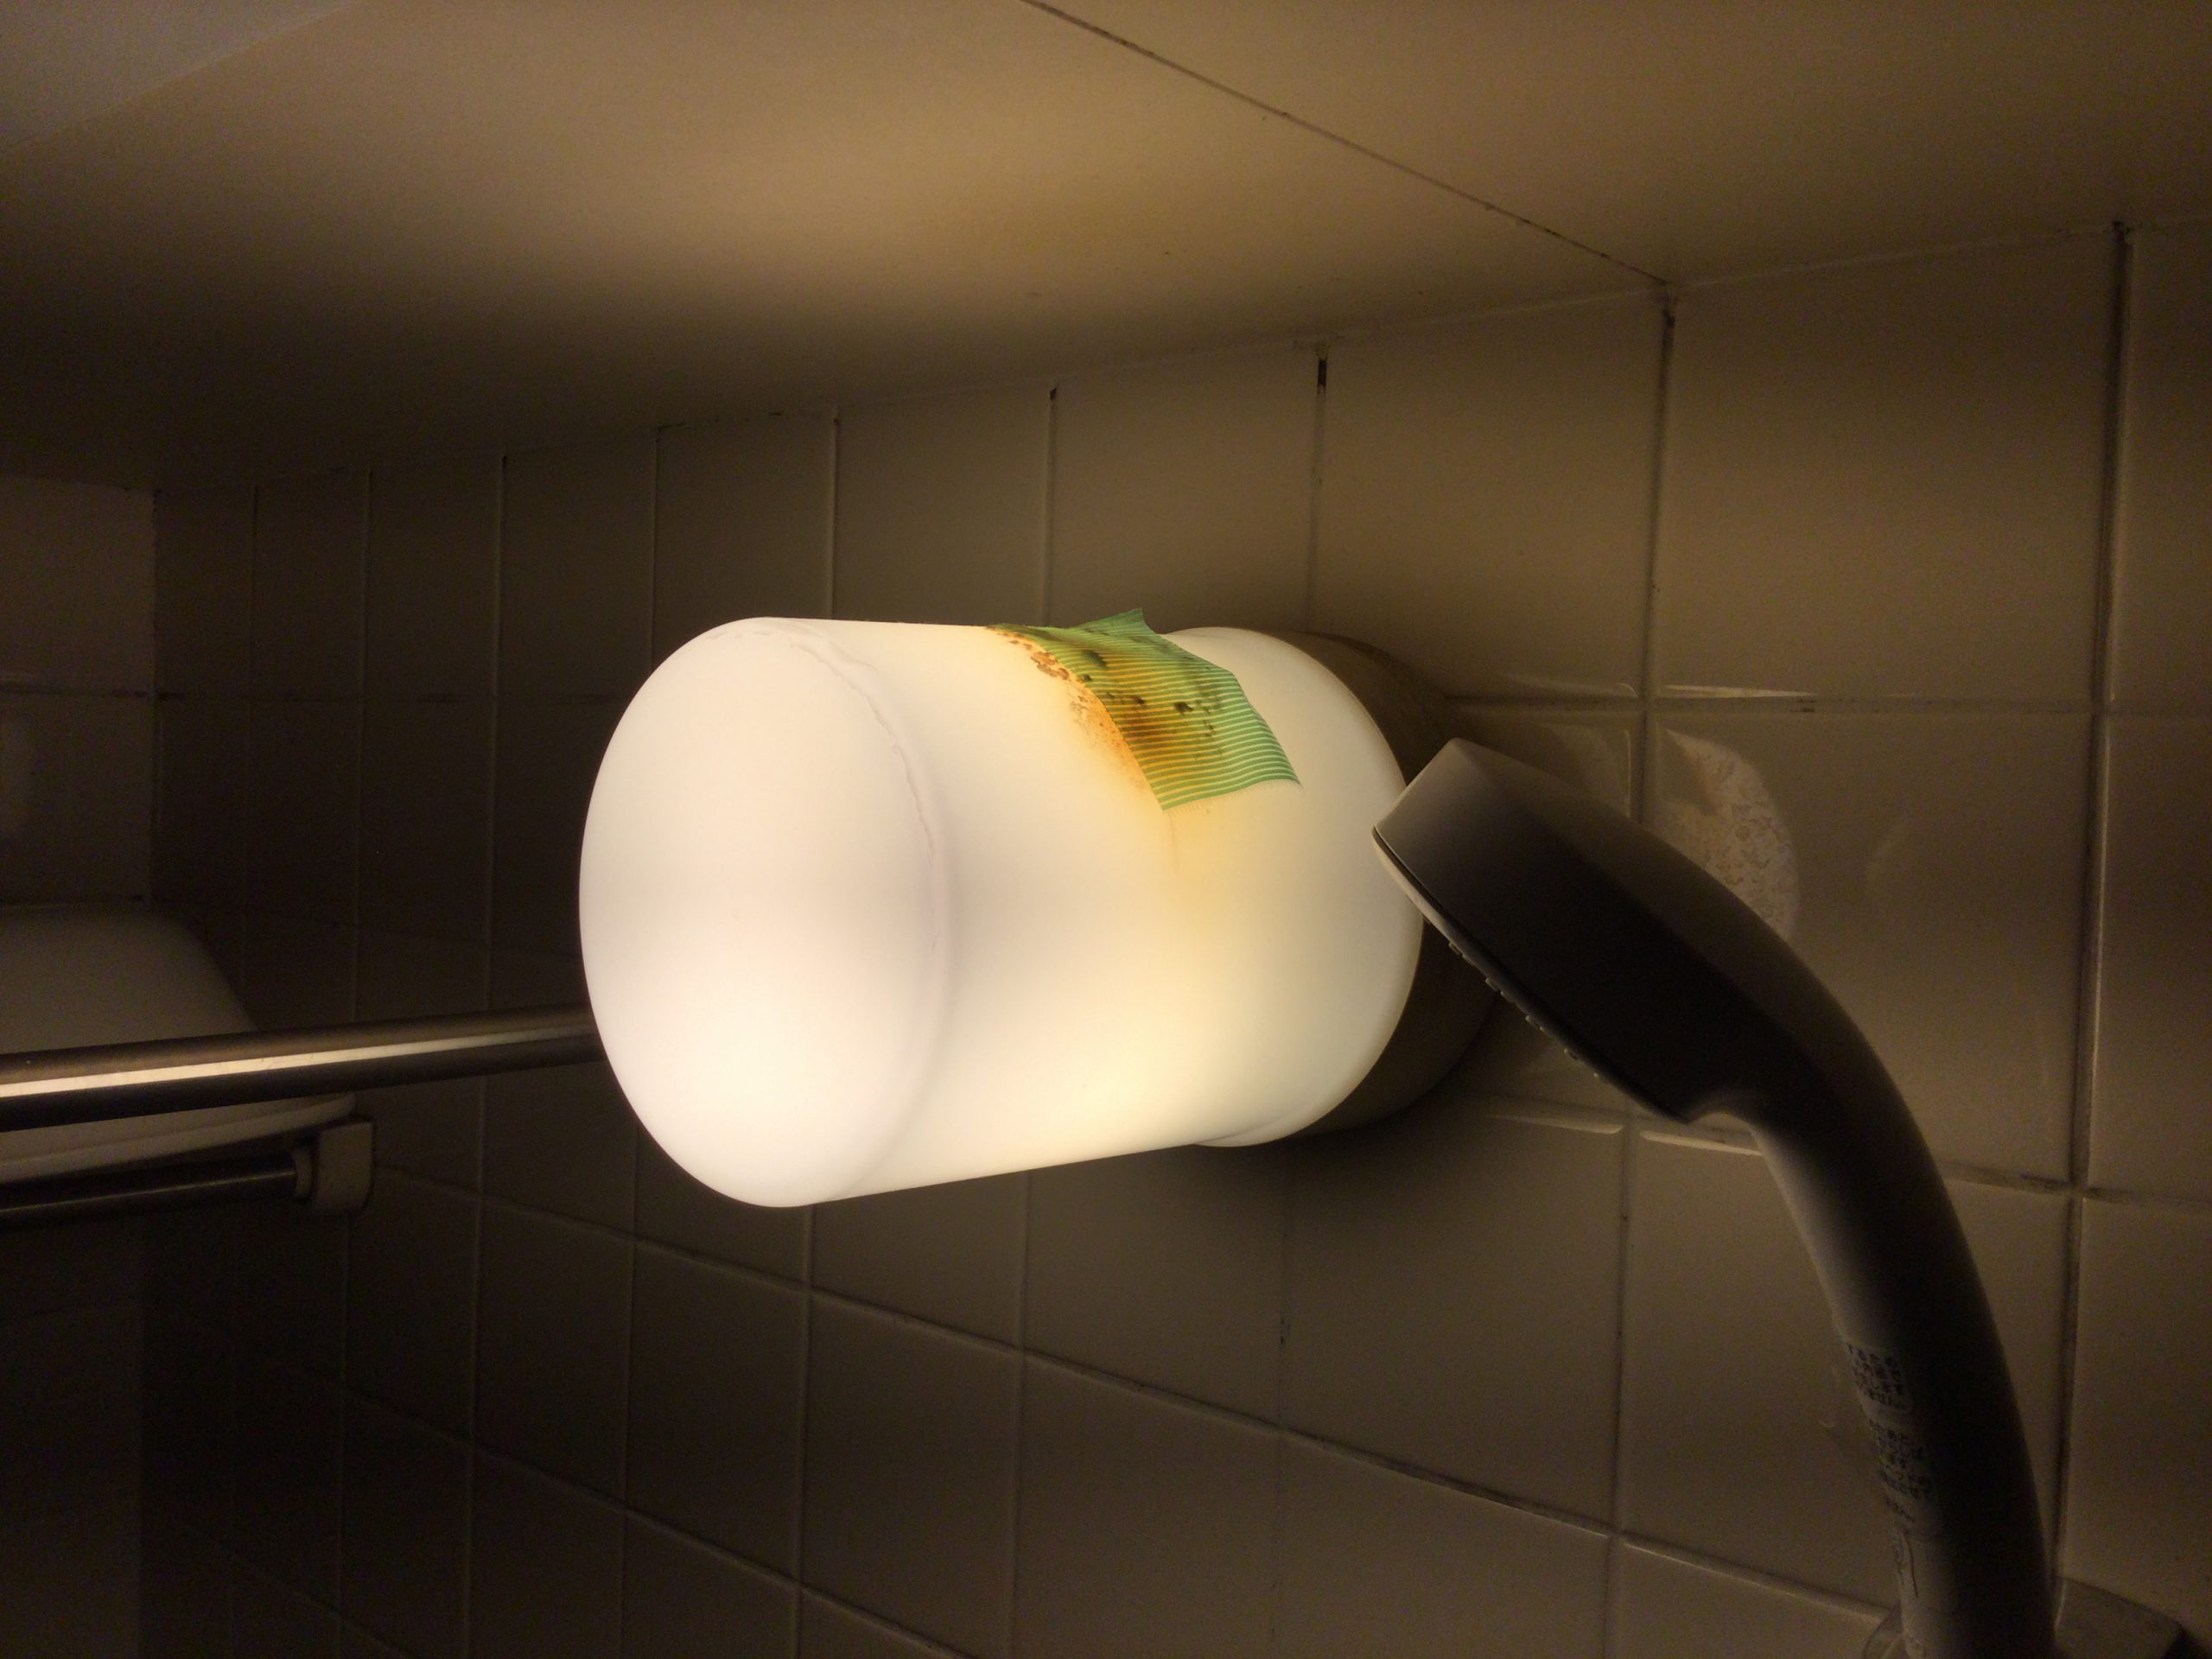 バスルームライト てるくにでんき 照明器具の実例集